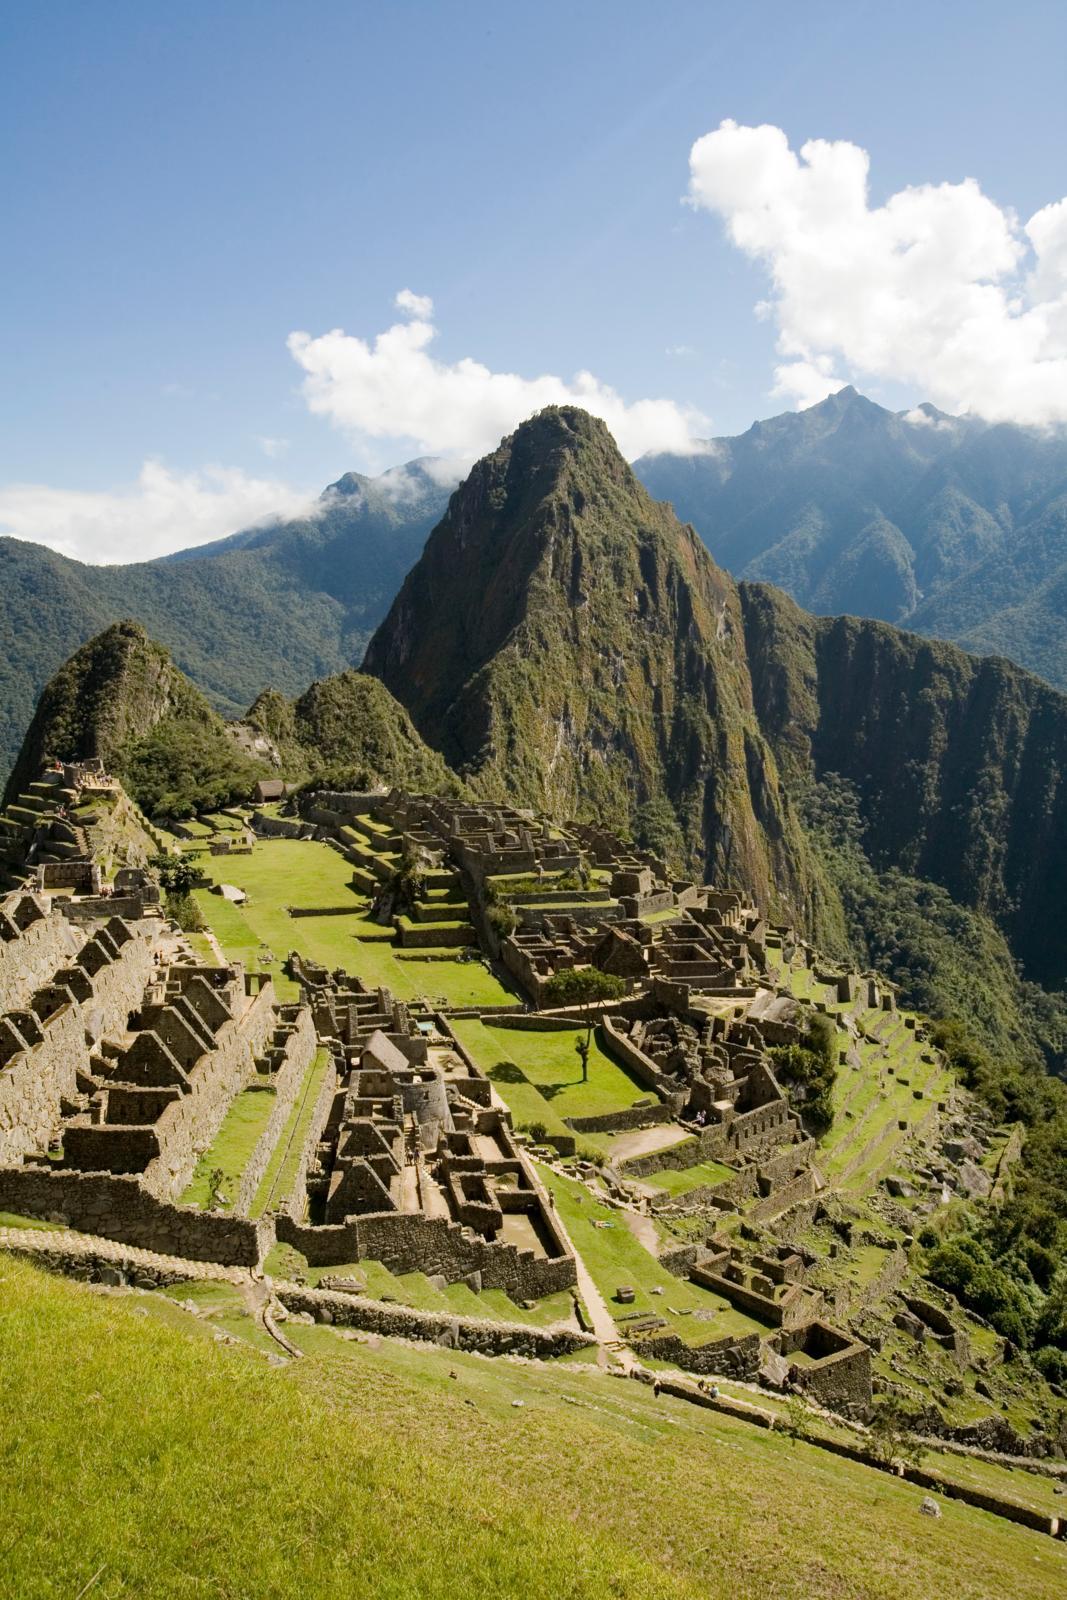 去南美国家旅游,有哪些地方最值得去?